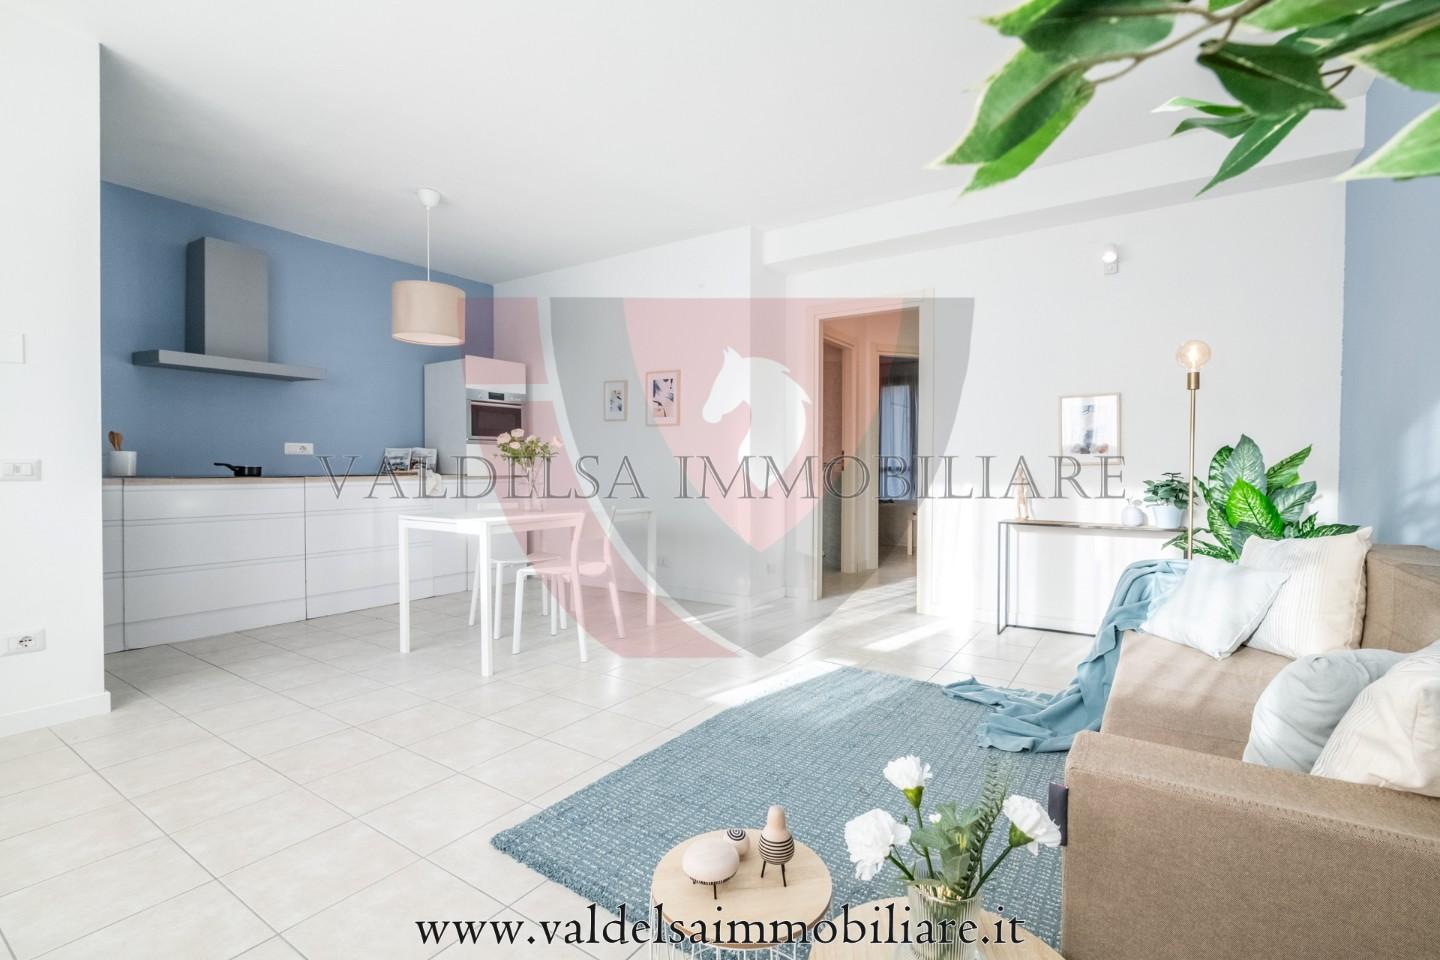 Appartamento in vendita a Colle di Val d'Elsa, 3 locali, prezzo € 138.000 | PortaleAgenzieImmobiliari.it